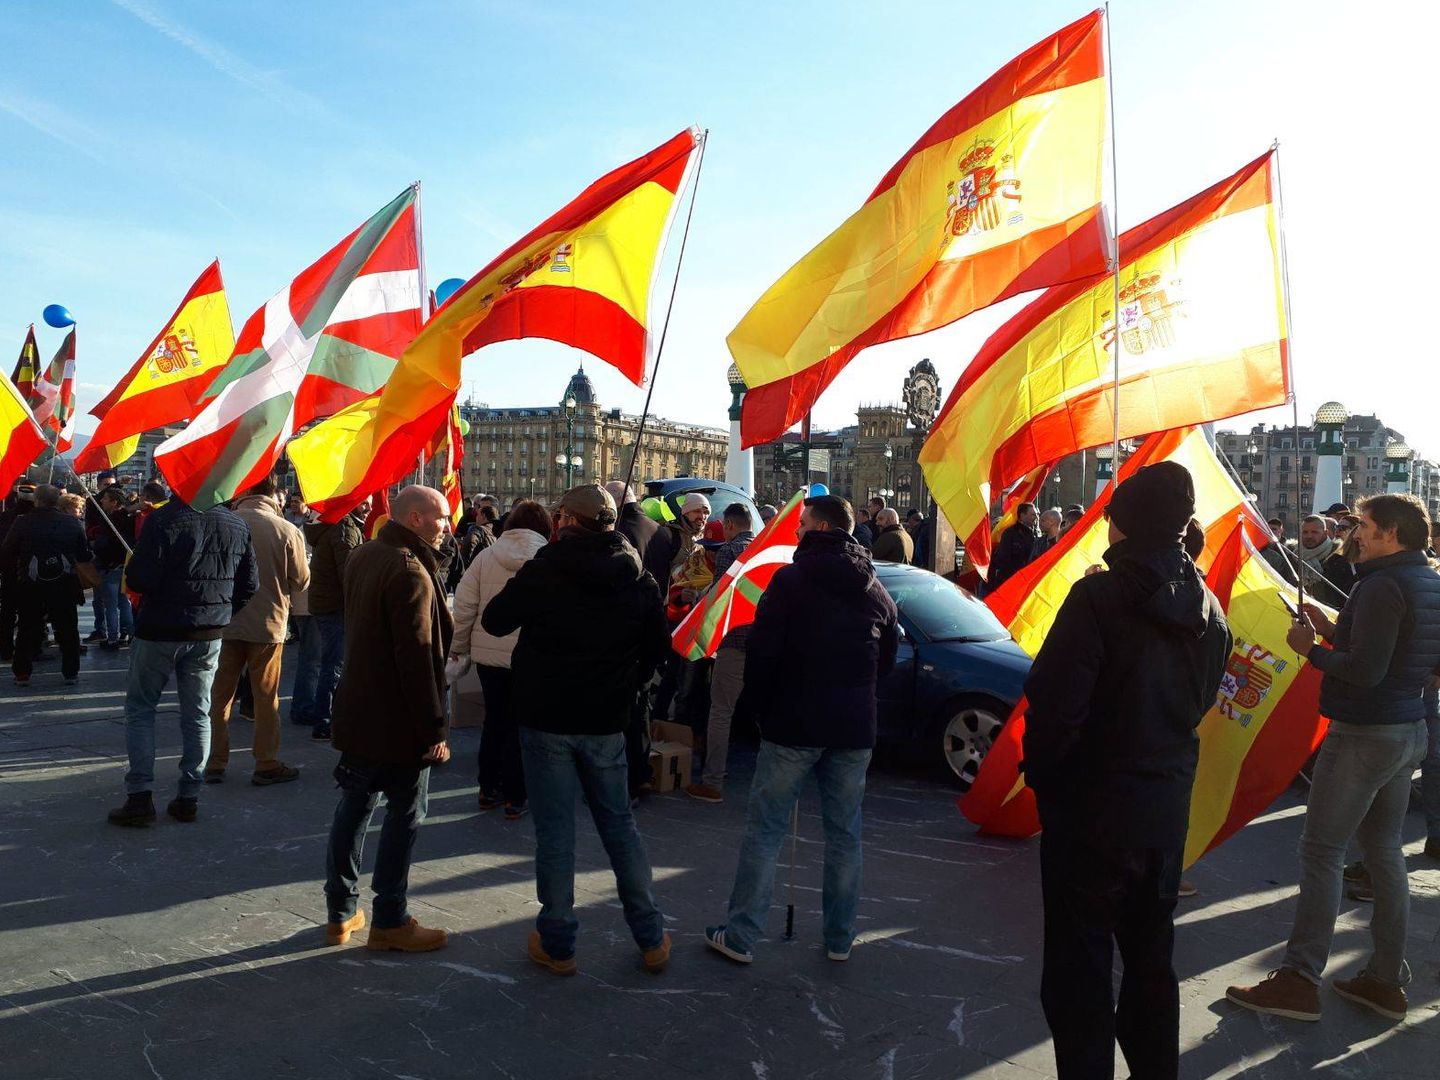 Banderas españolas, al inicio de la marcha en los aledaños del Kursaal. (J. M. A.)